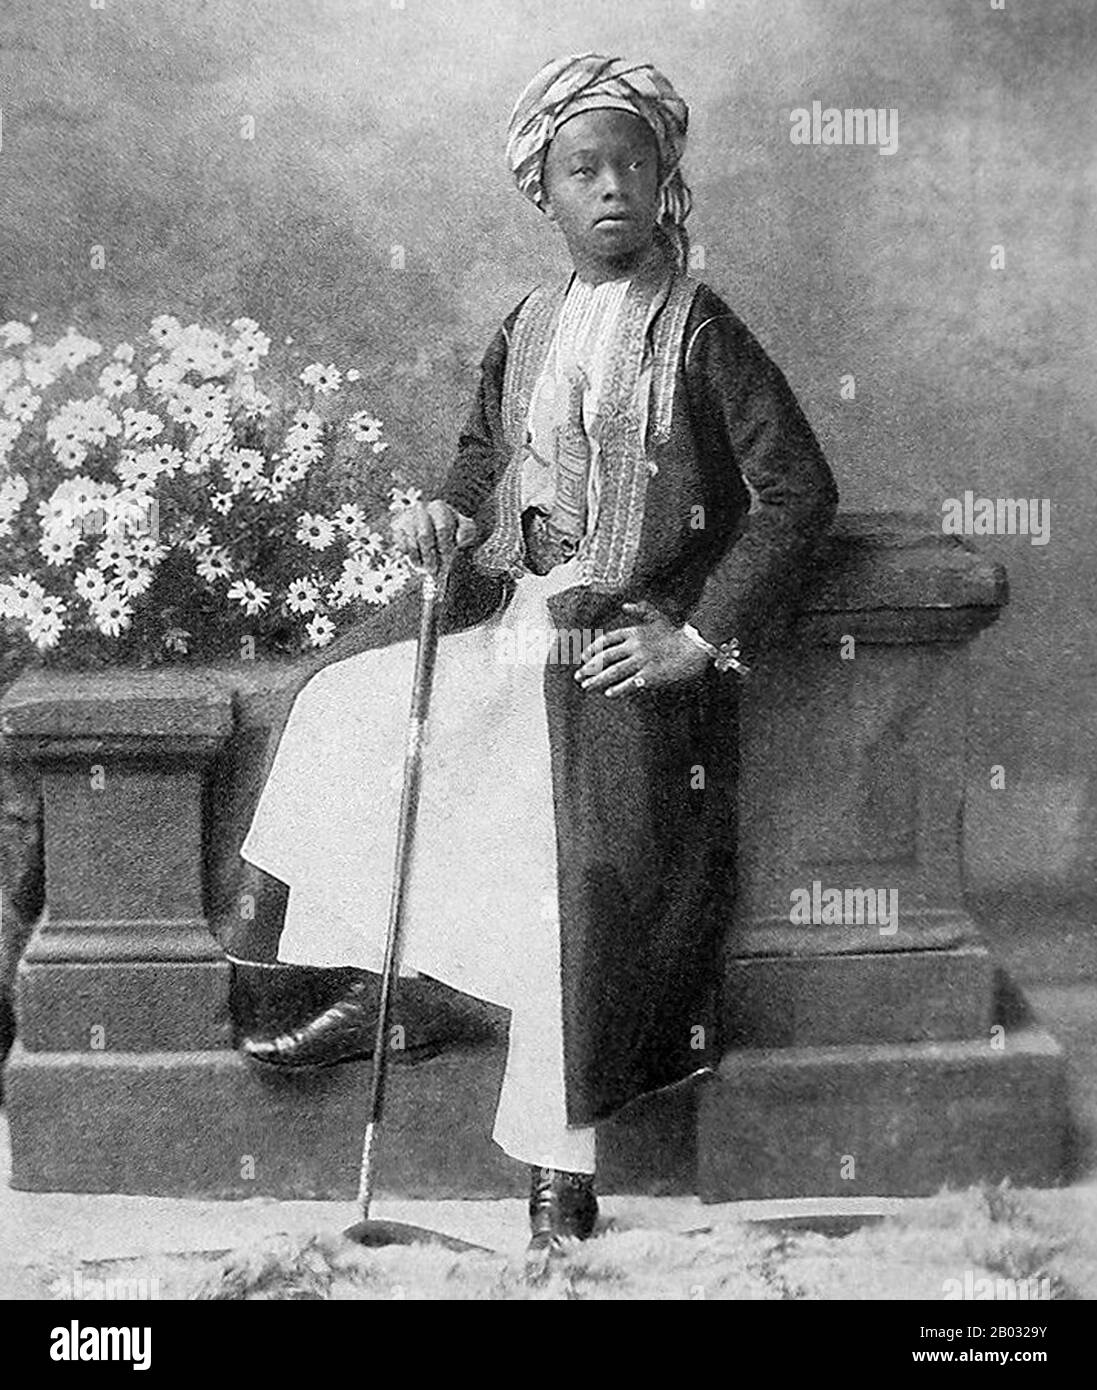 Sayyid Ali bin Hamud Al-Bussaid (7 juin 1884 – 20 décembre 1918) était le huitième sultan de Zanzibar. Ali a gouverné Zanzibar du 20 juillet 1902 au 9 décembre 1911, ayant succédé au trône à la mort de son père, le septième sultan. Il n'a servi que quelques années comme sultan à cause de la maladie. En 1911, il abdiqua en faveur de son beau-frère Sayyid Khalifa bin Harub Al-Bussaid. Banque D'Images